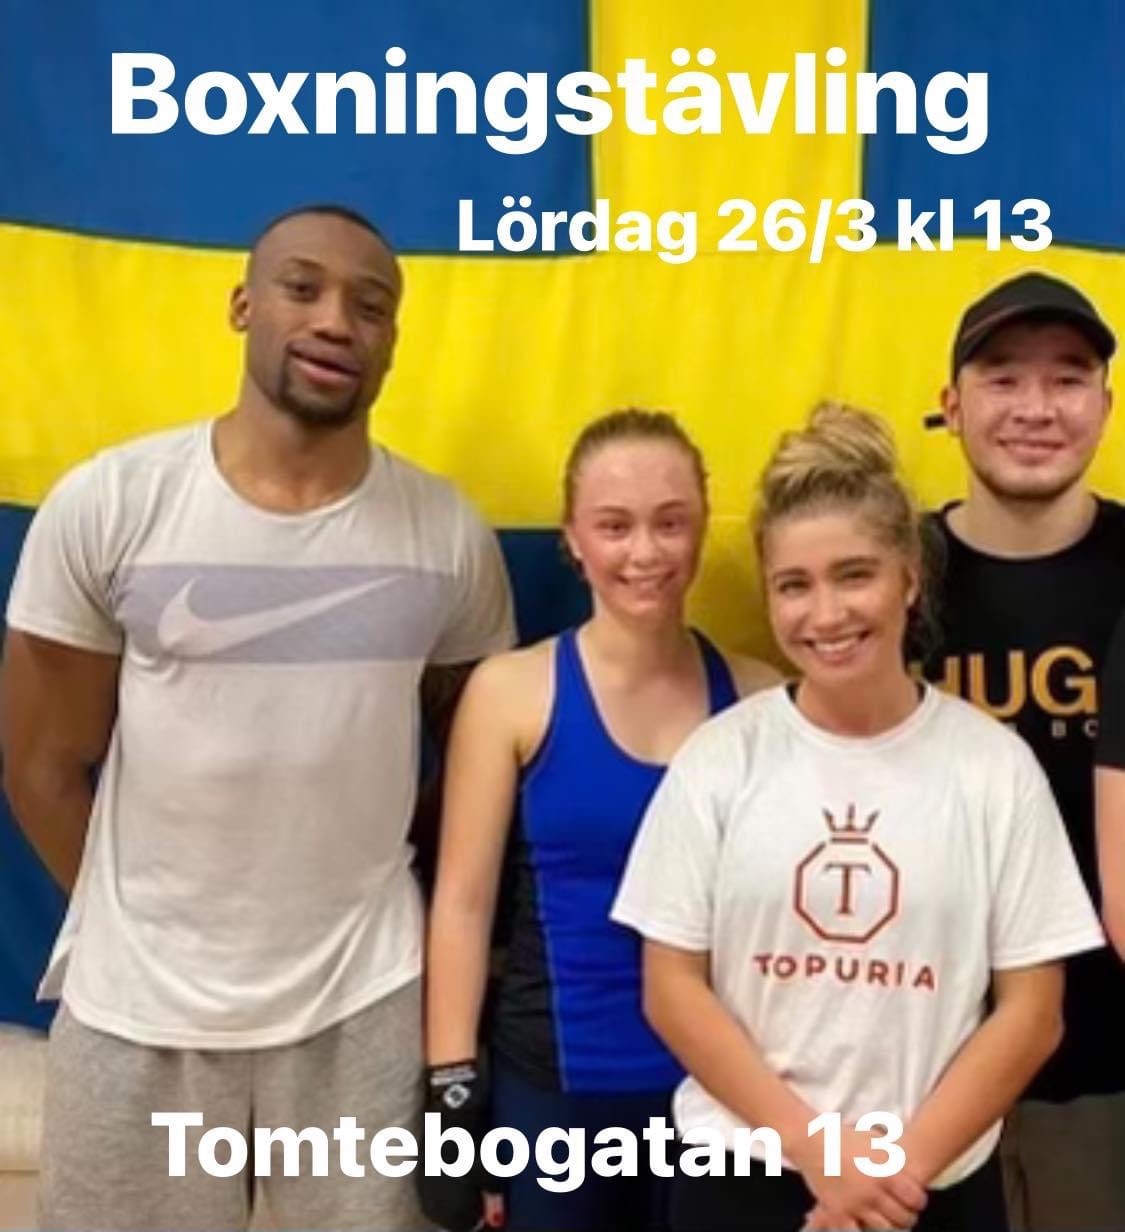 Boxningstävling hos Djurgården Boxning nu på lördag.